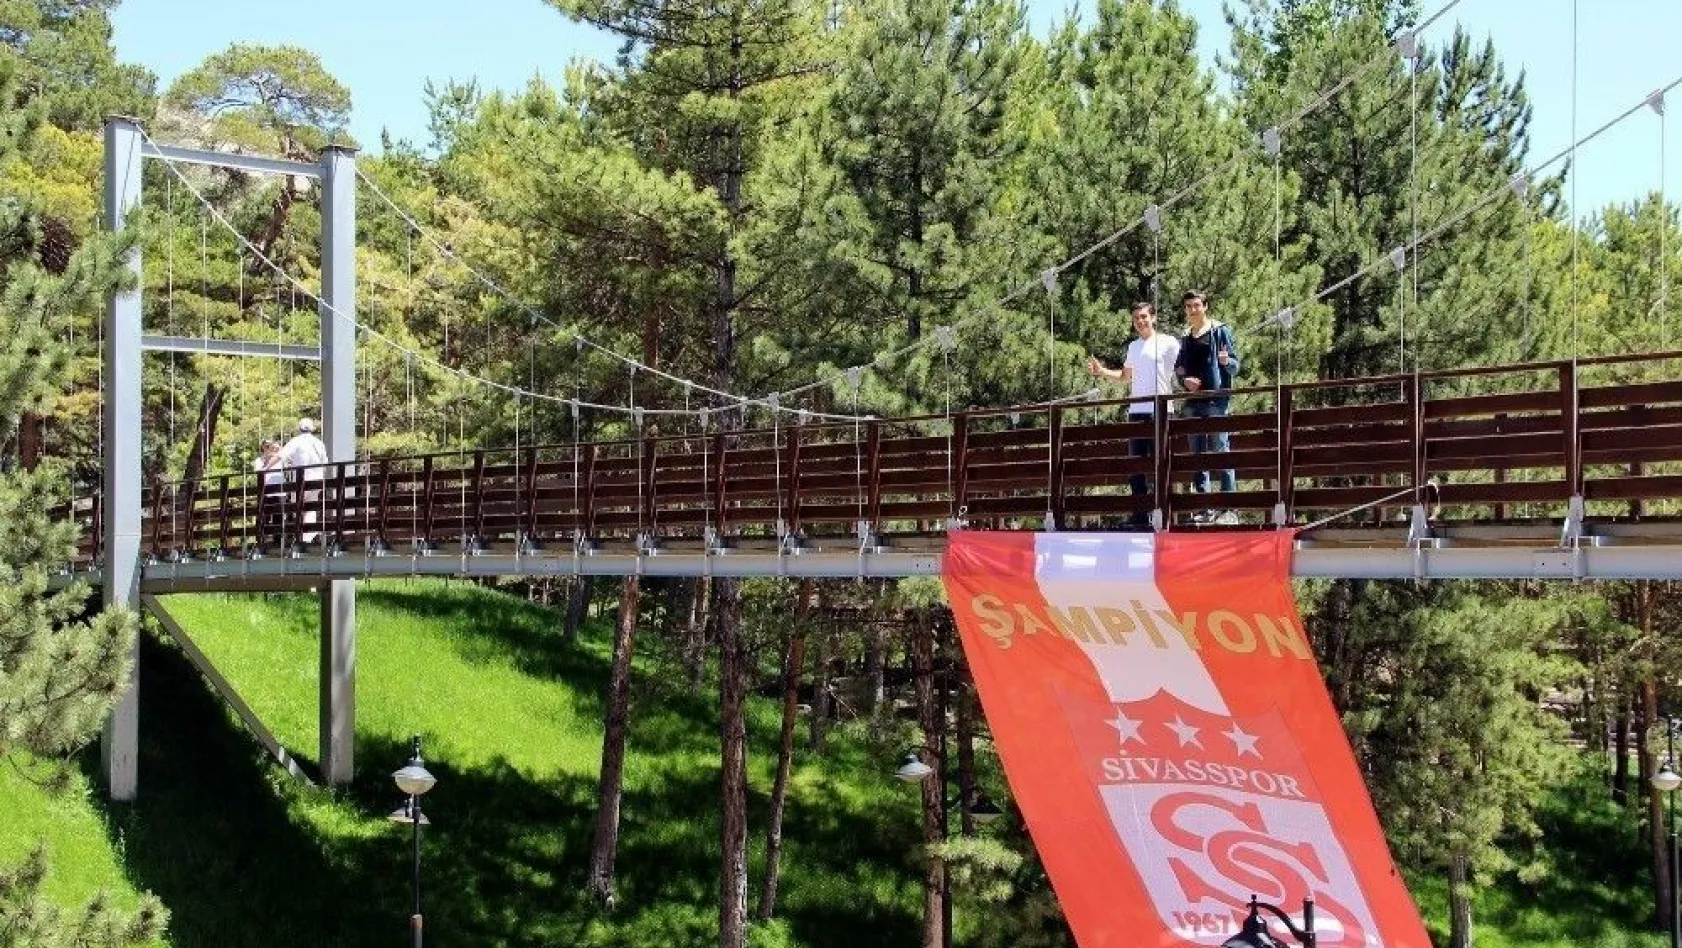 Sivasspor bayrağı 'minyatür boğaz köprüsüne' asıldı
